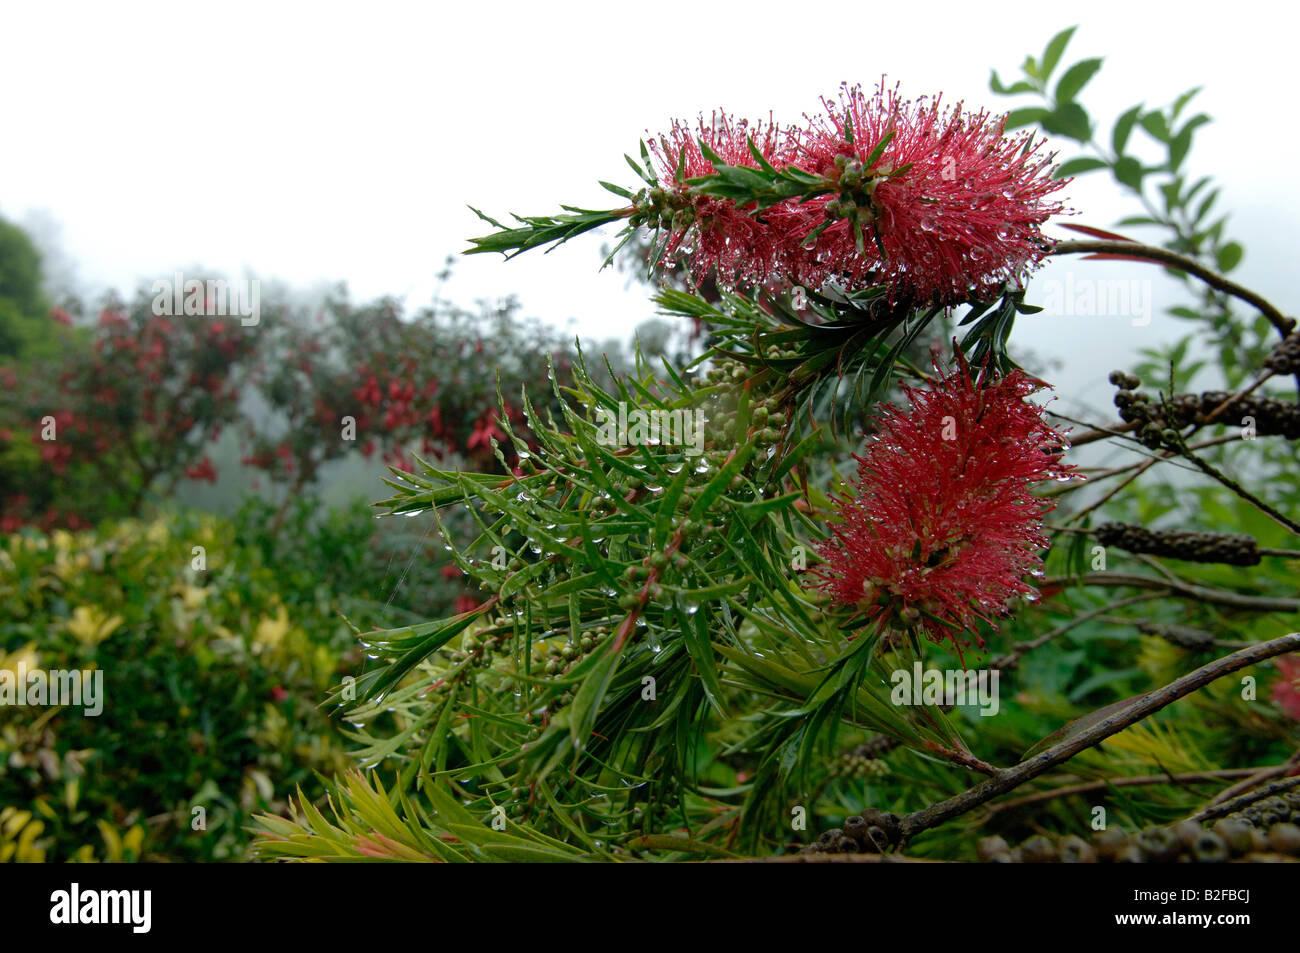 Red Australian bottle brush Callistemon flowers with rain drops Stock Photo